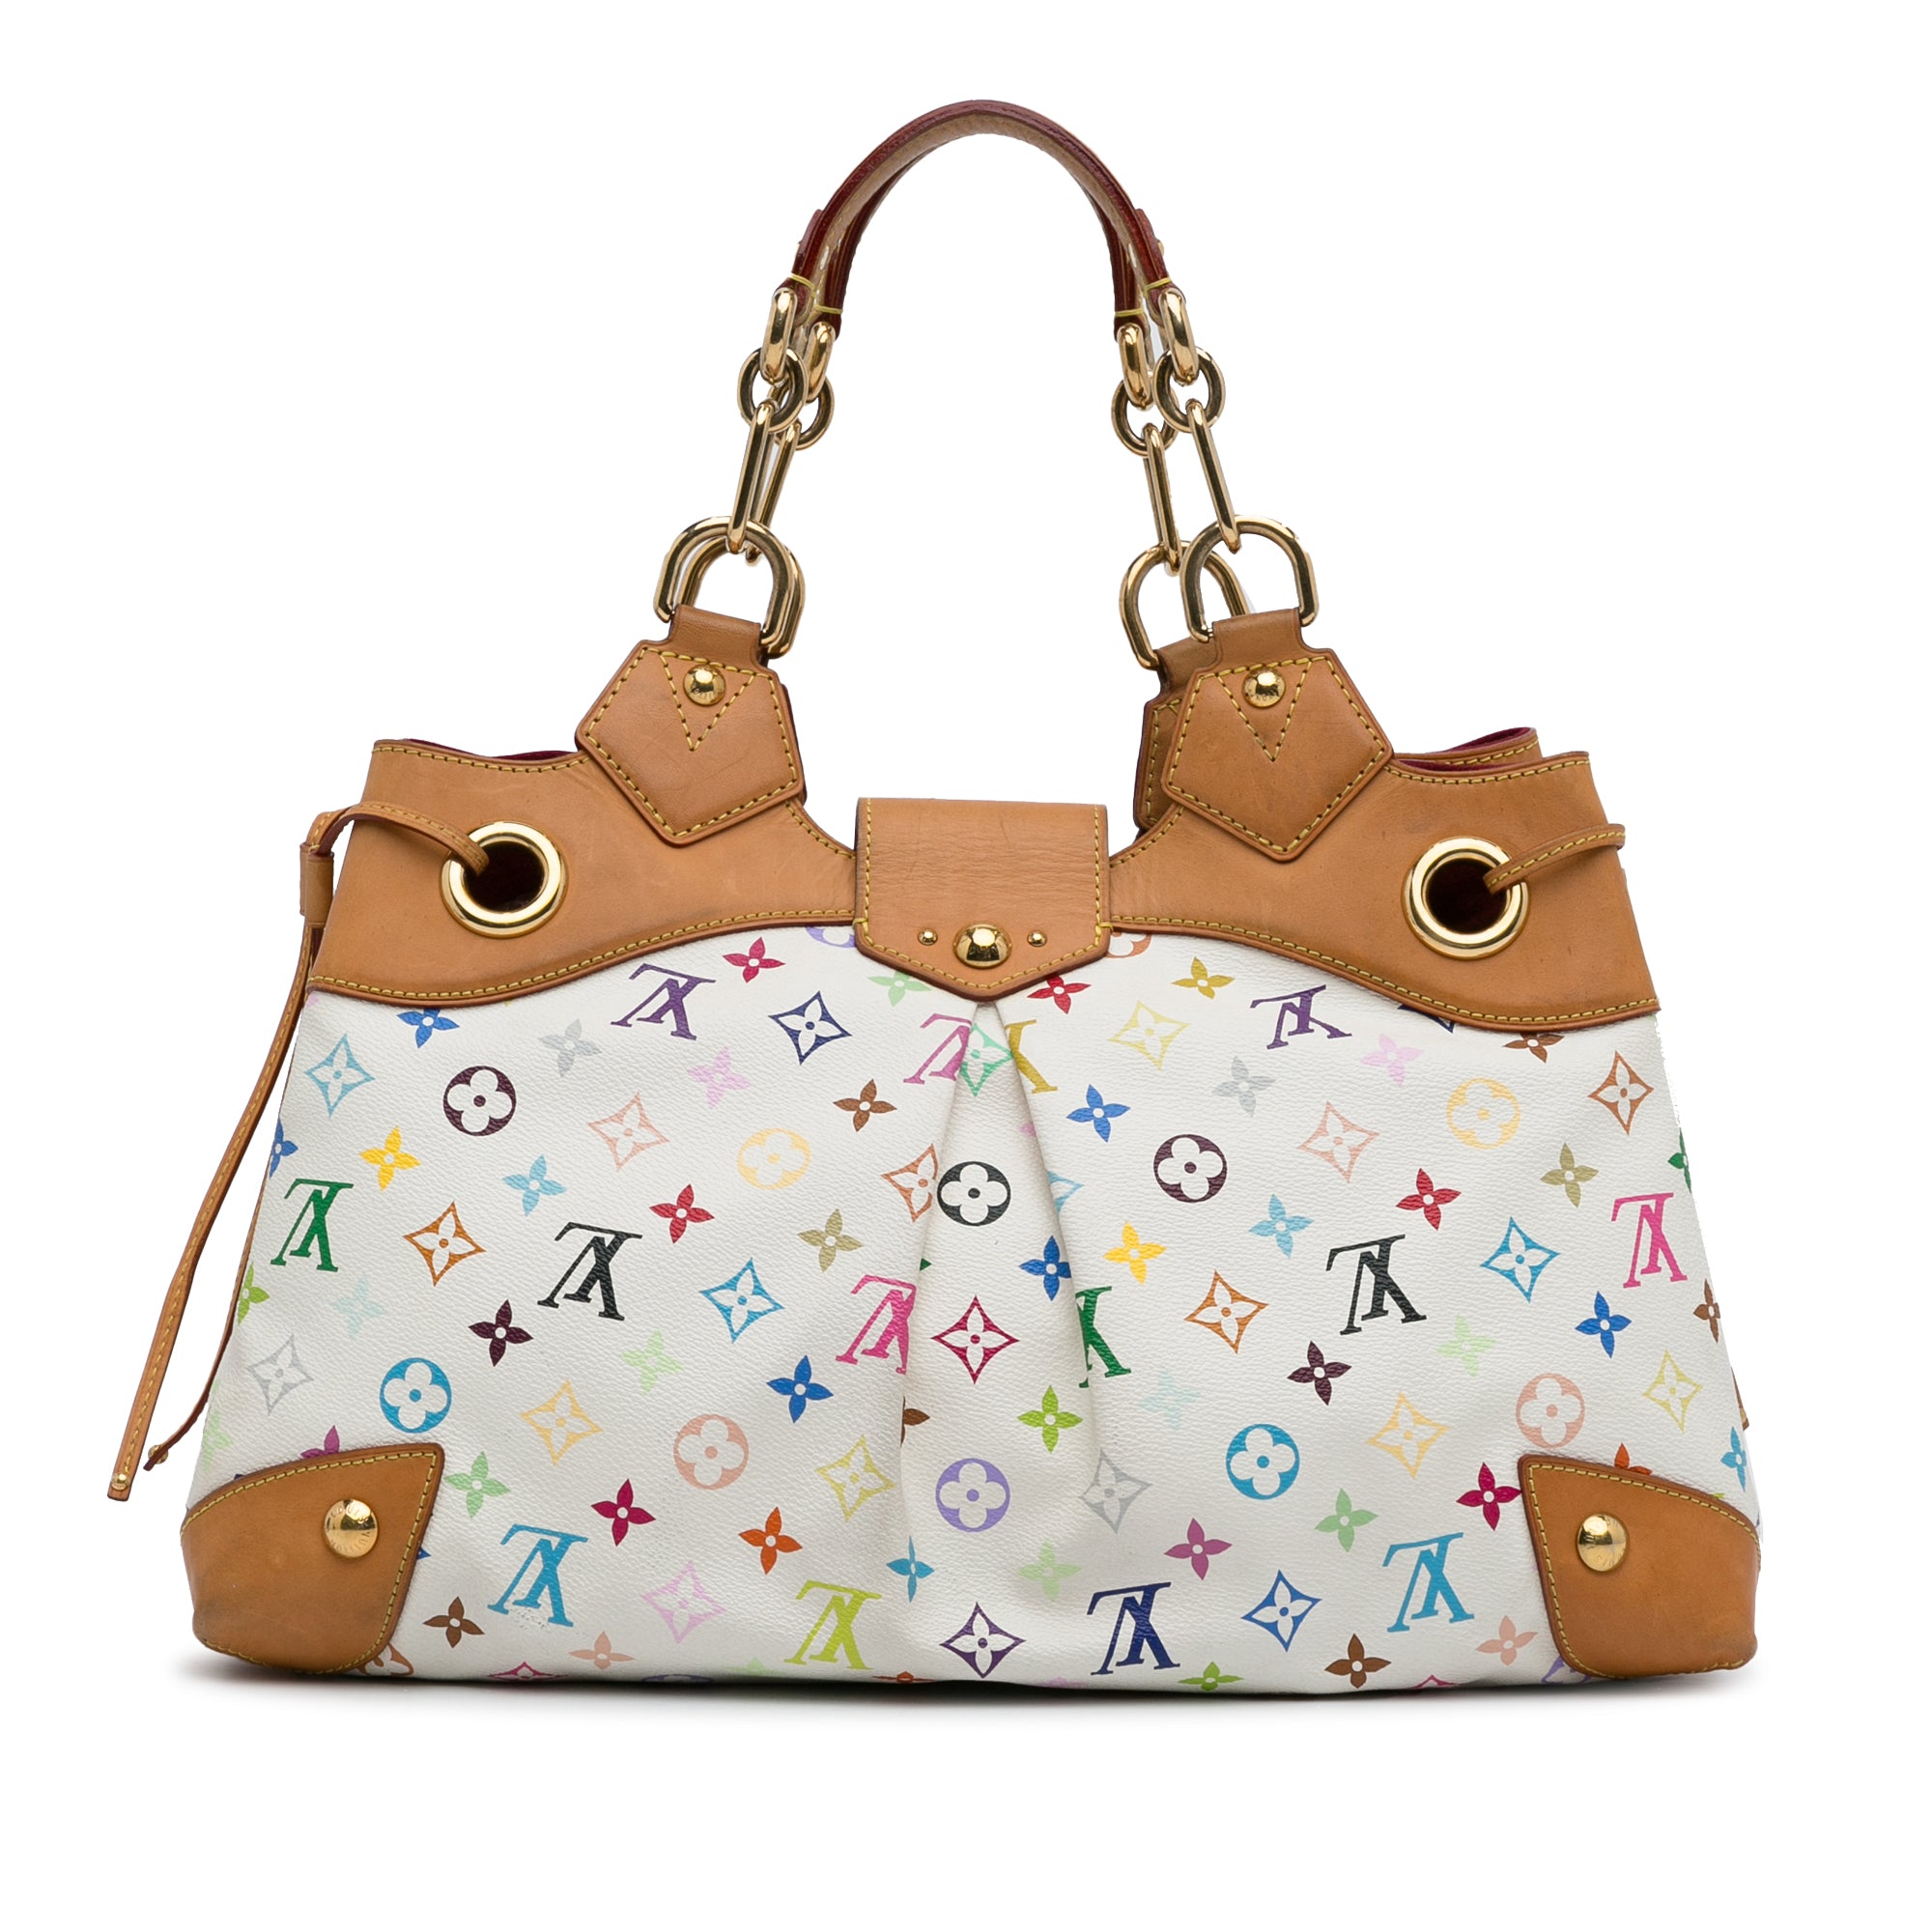 Stunning Louis Vuitton Handbag Designer Leather Monogram Bag